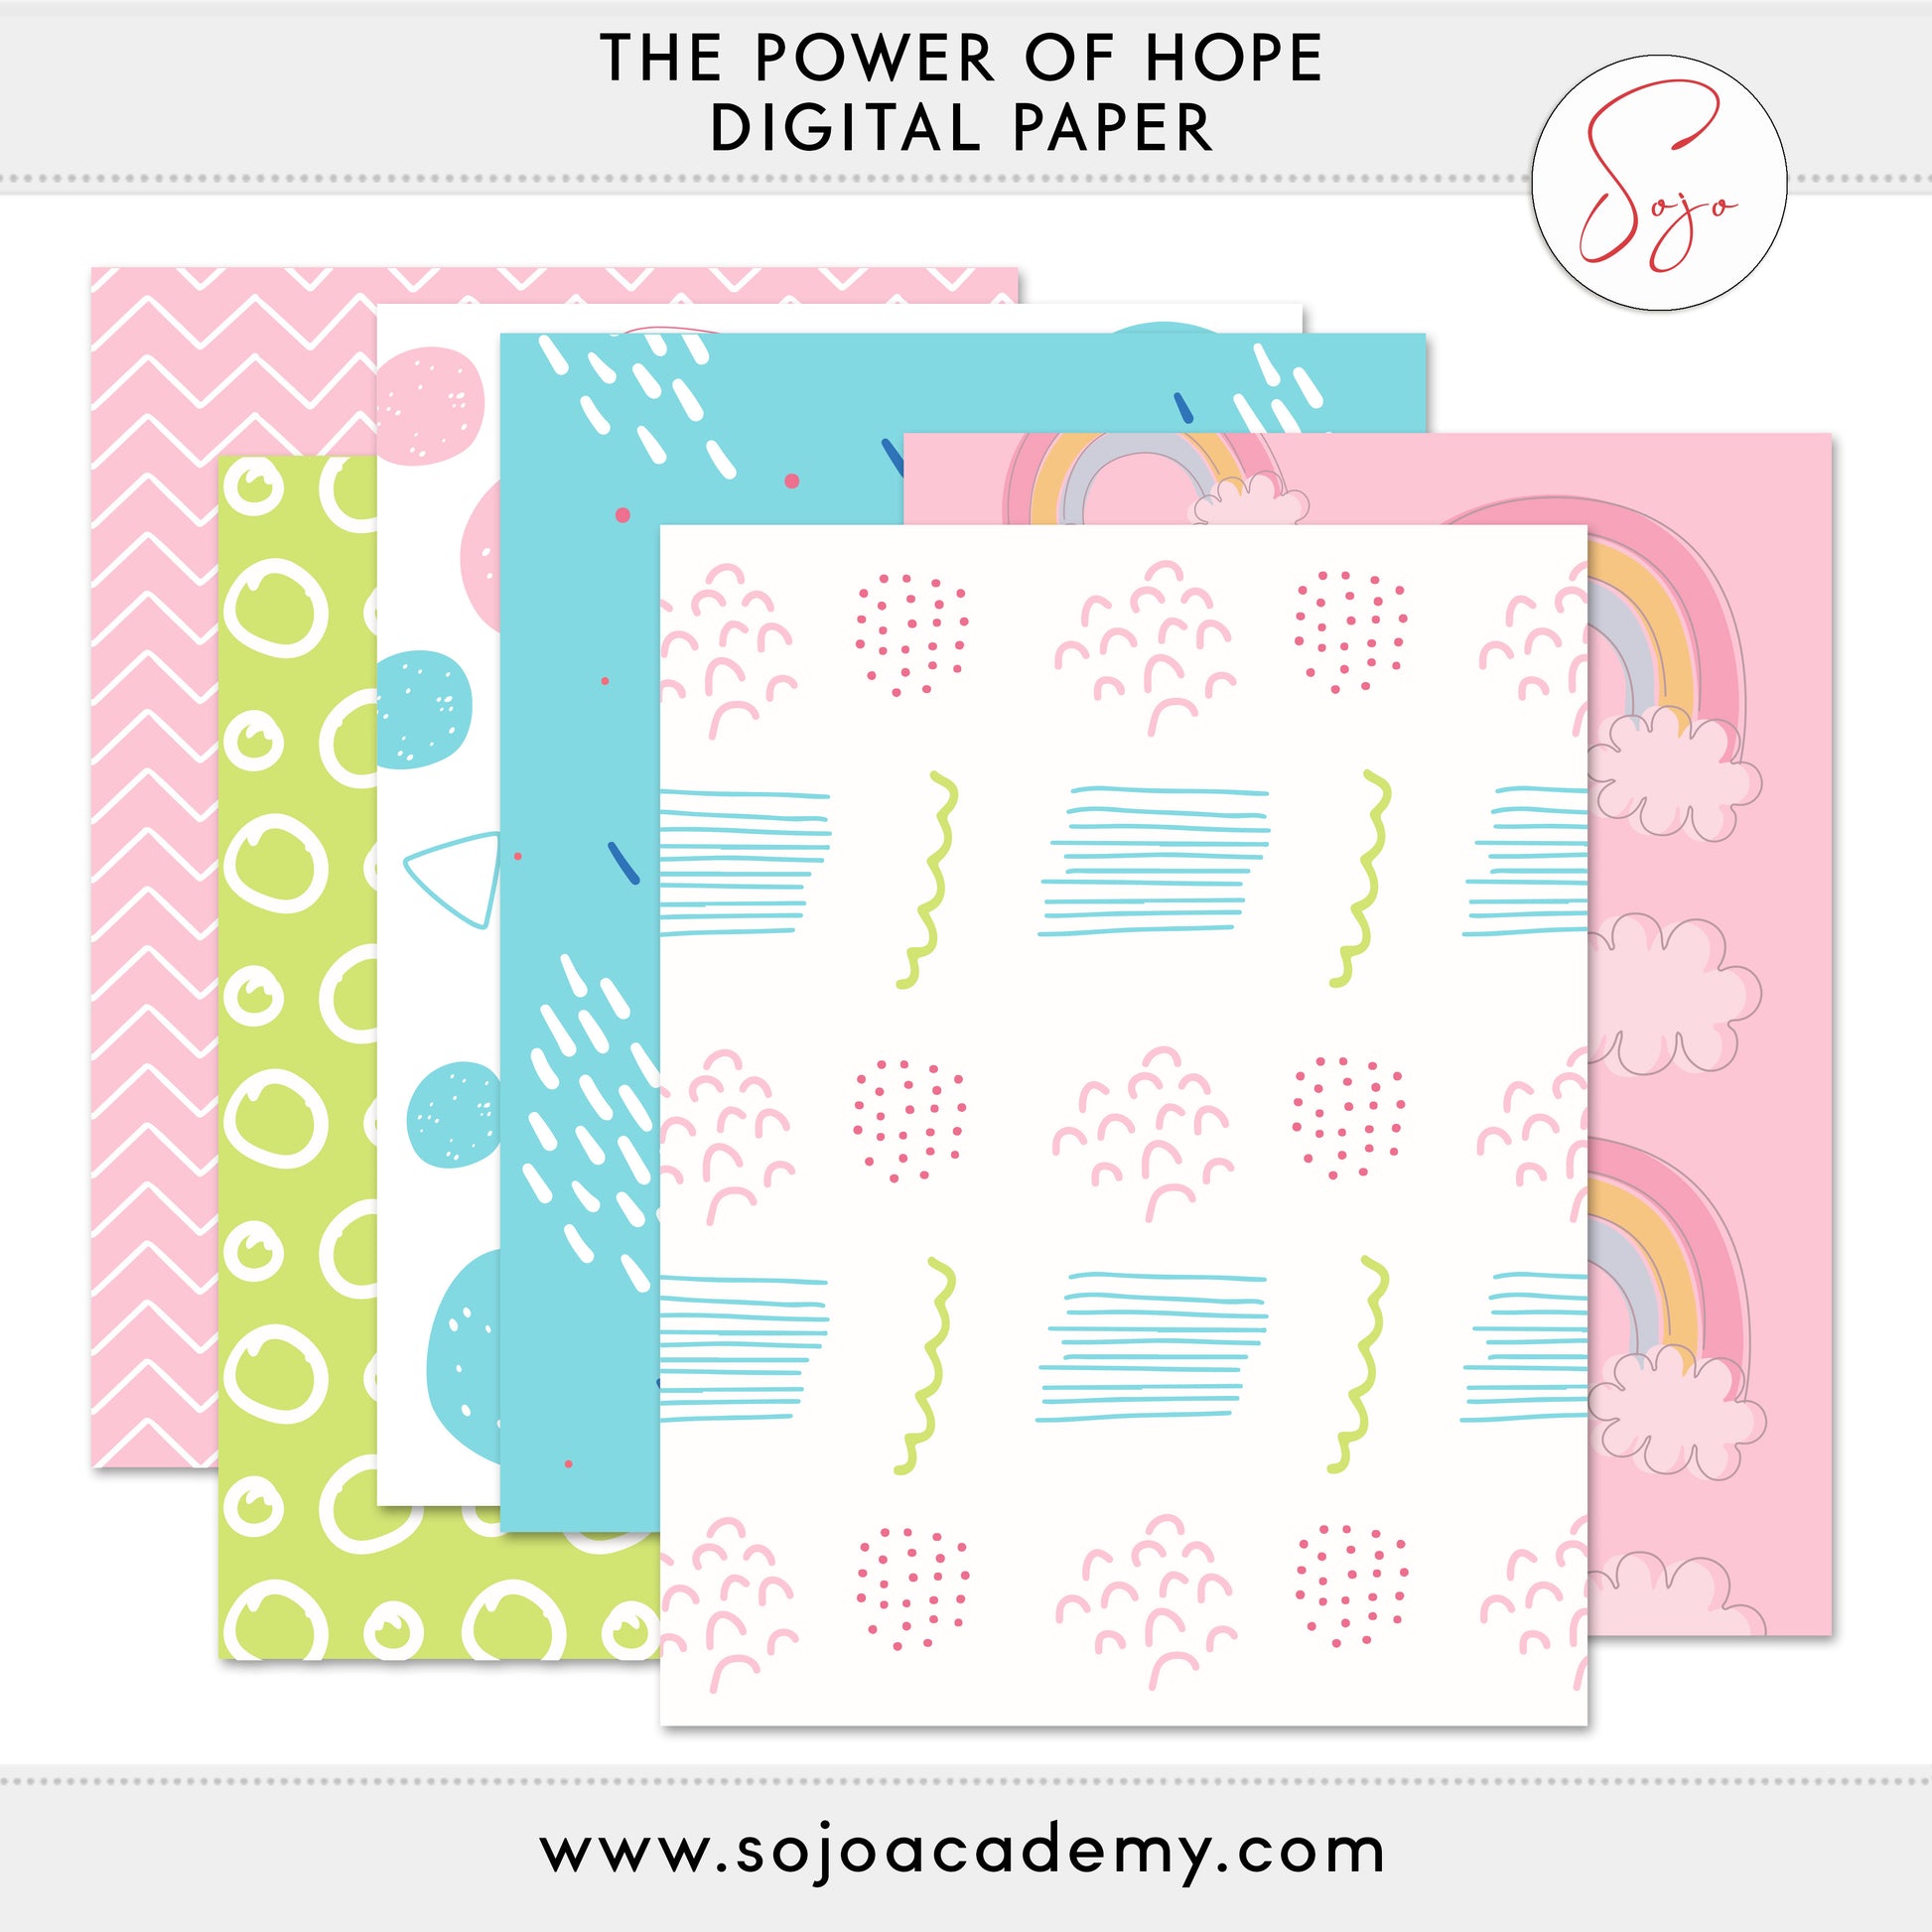 Bible Journaling Kit - Purpose of Hope – purposeofhope